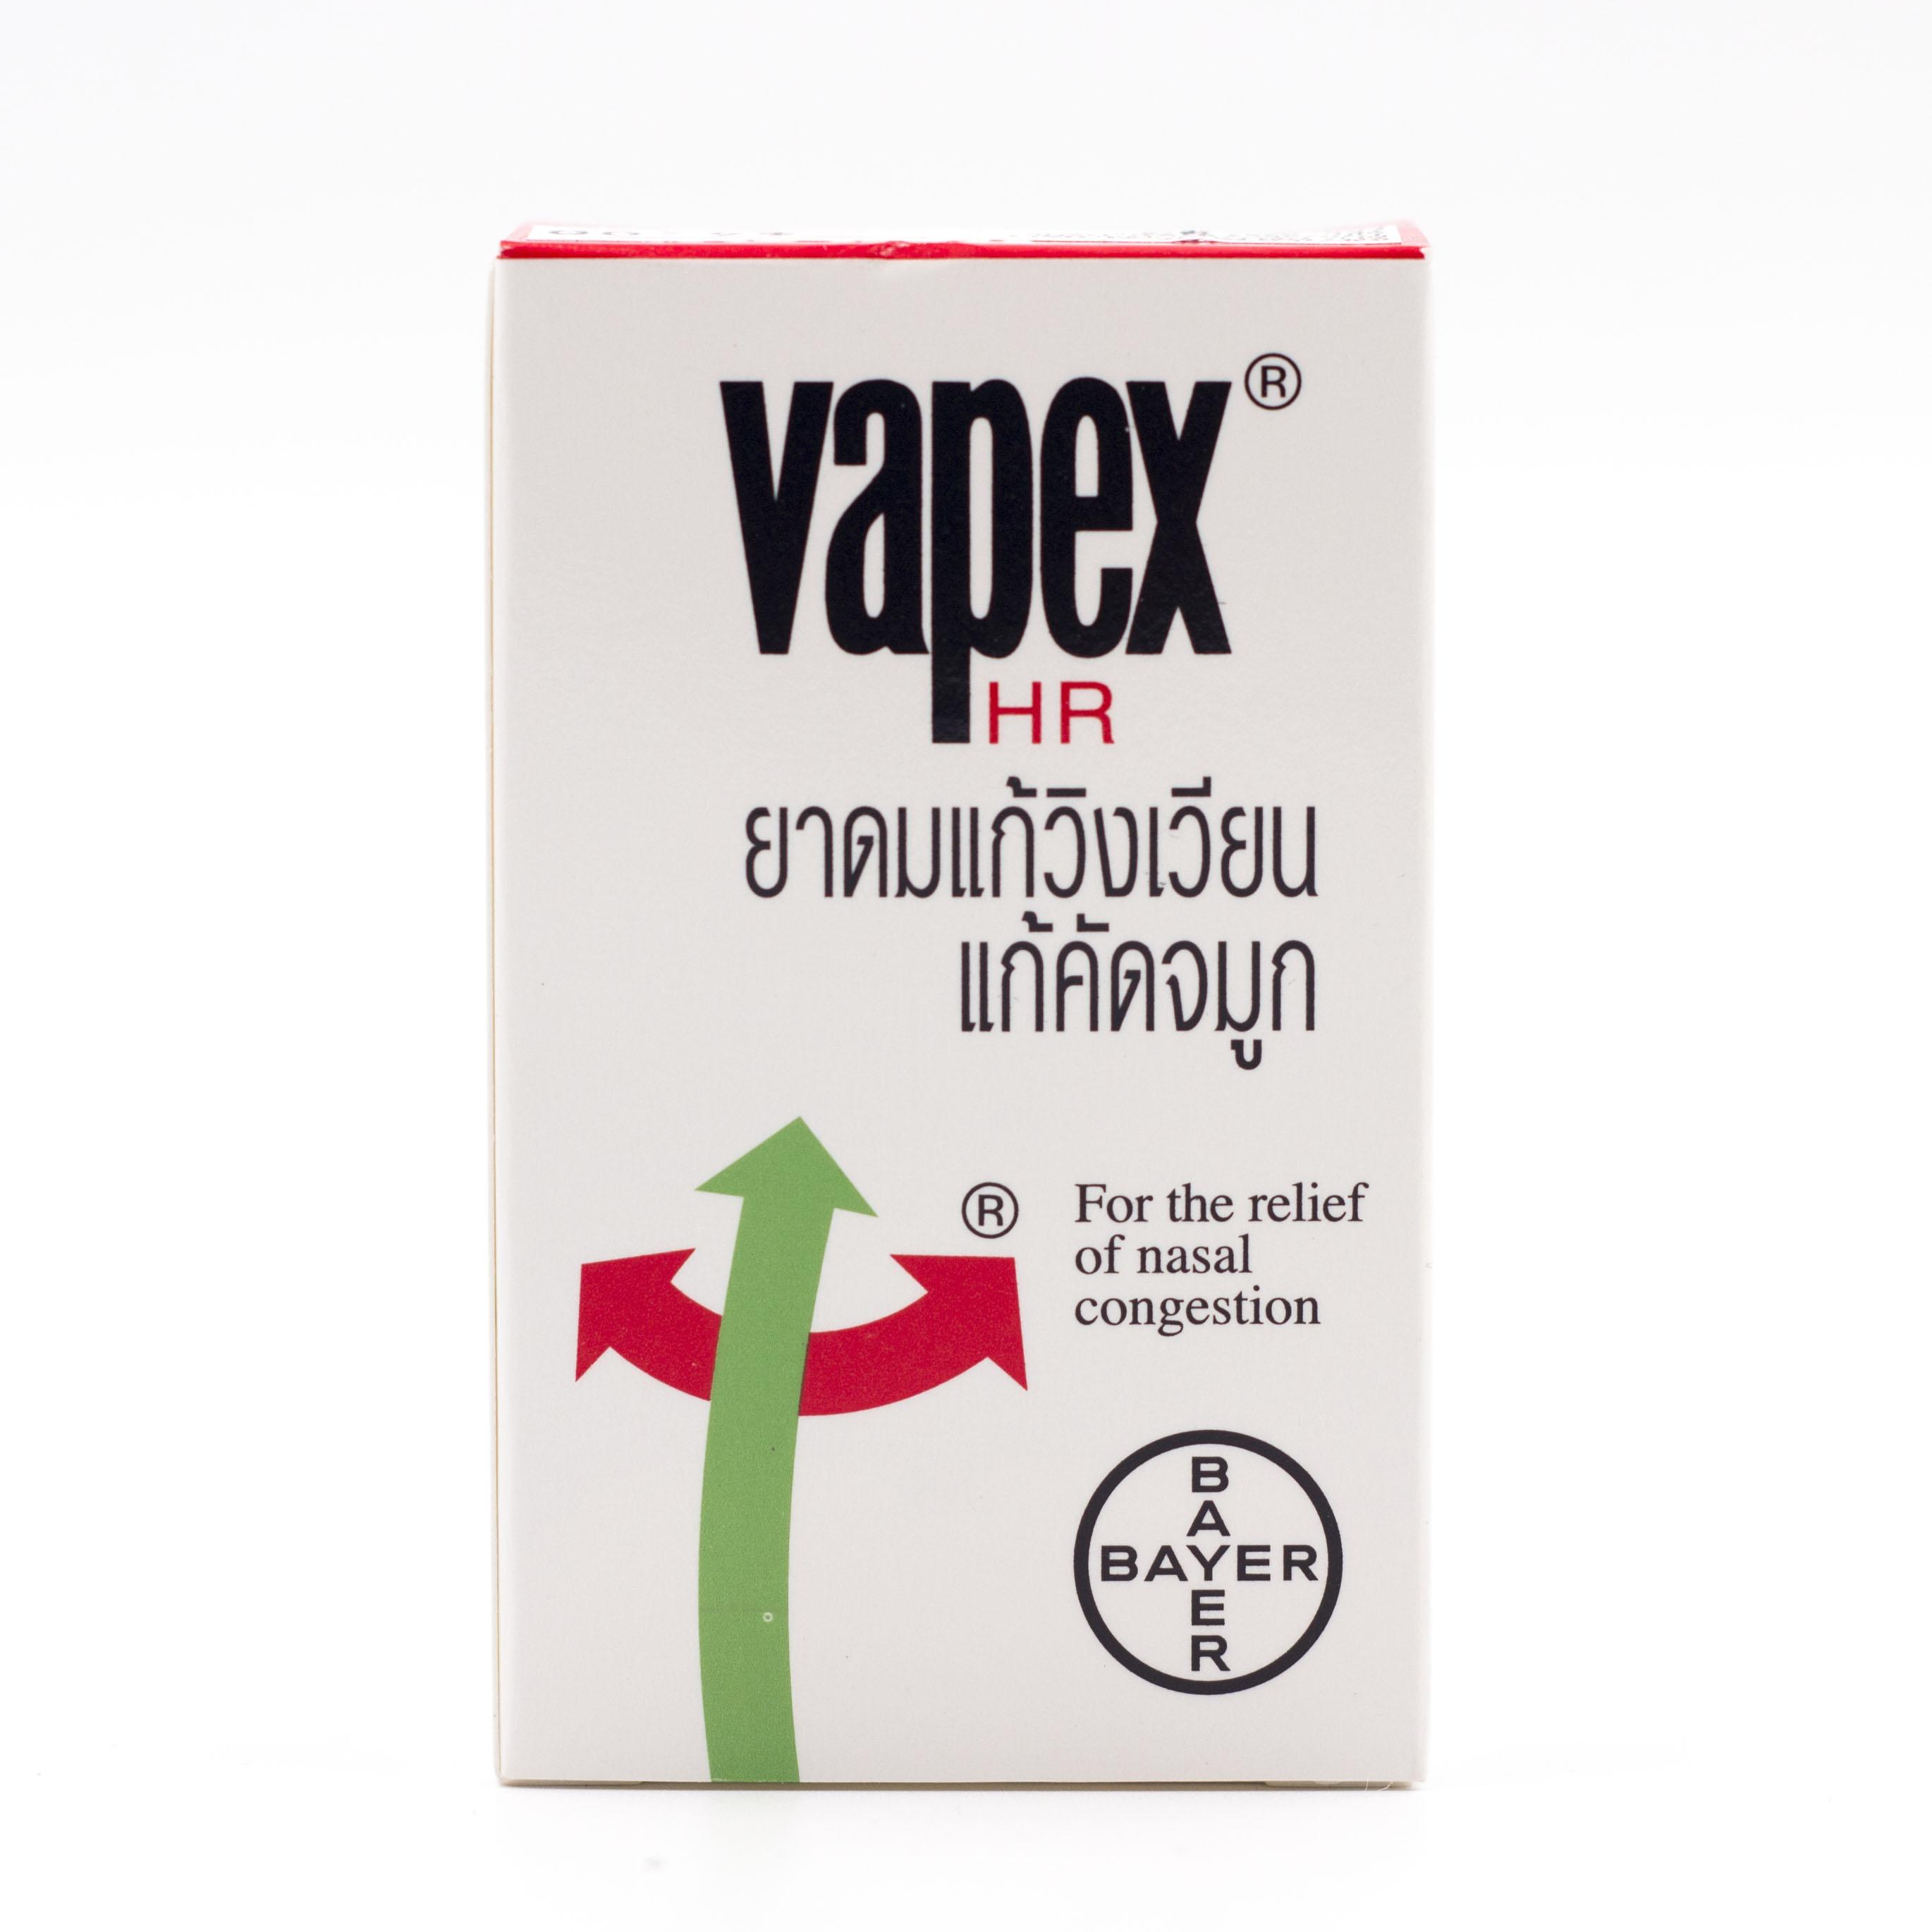 Vapex 5มล 1ขวด วาเป๊กซ์ แก้วิงเวียน คัดจมูก [ยาสามัญประจำบ้าน - Household remedies]